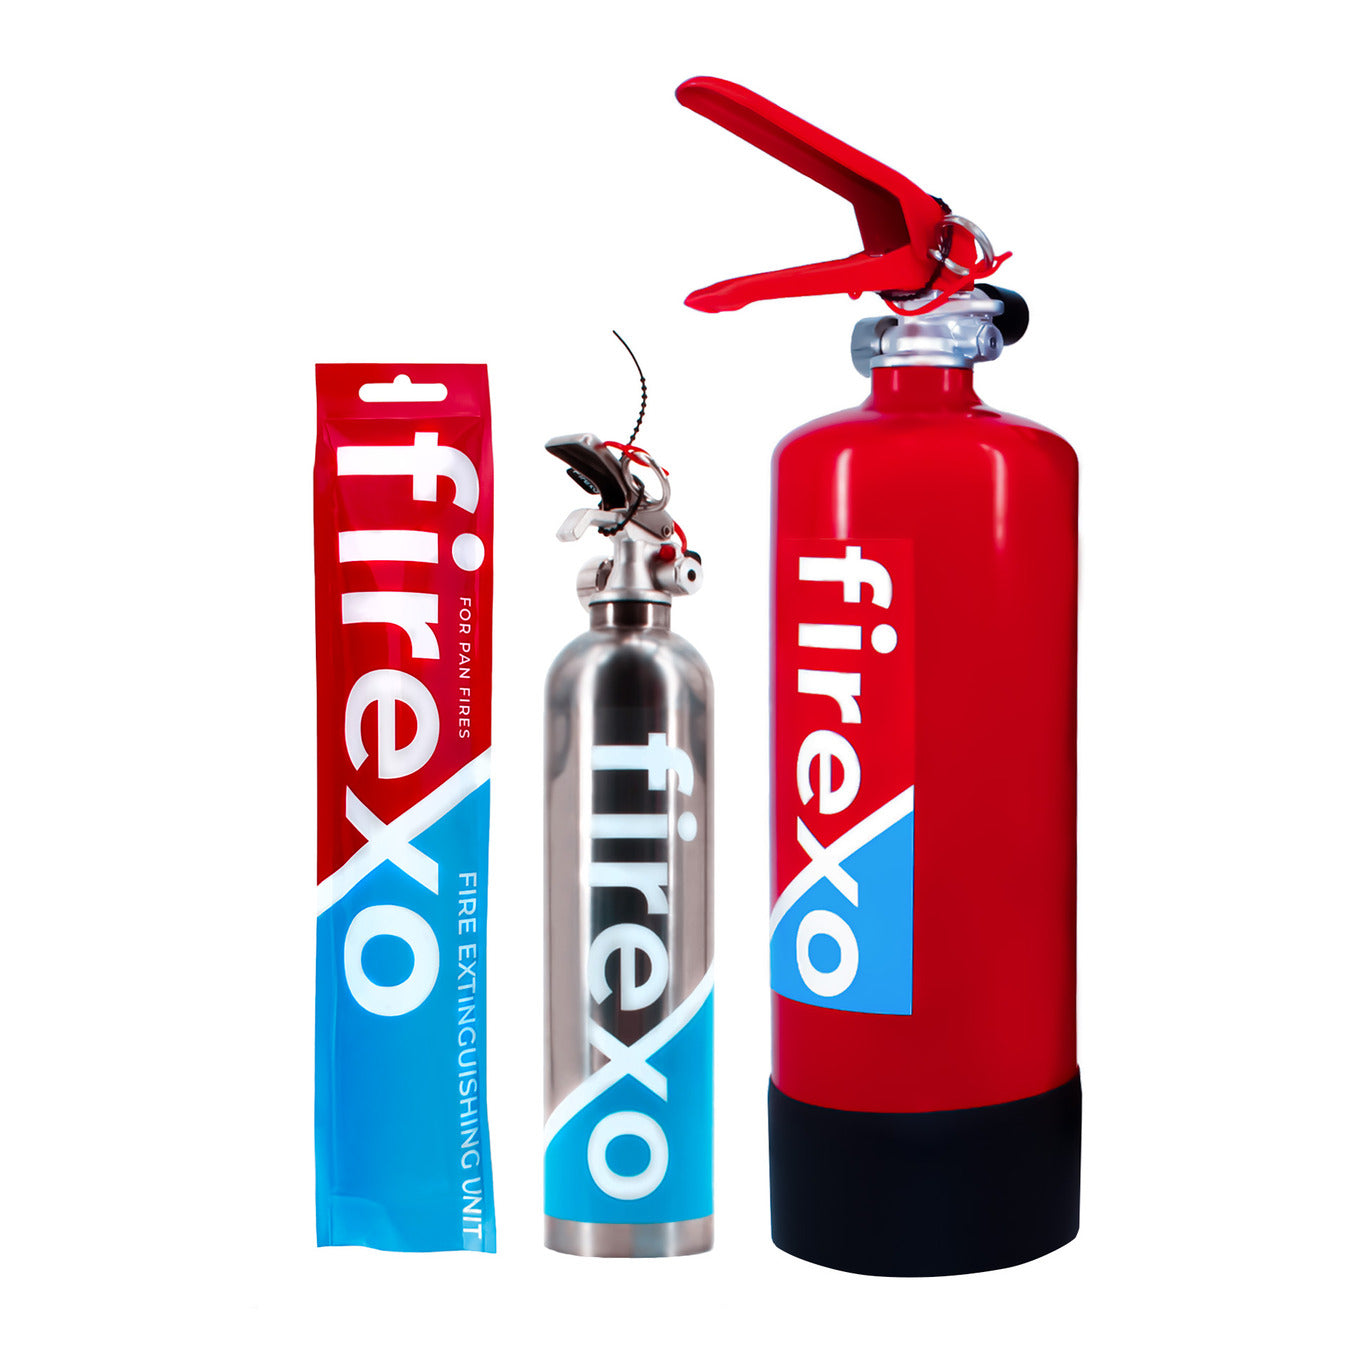 Zestaw gasniczy Firexo - 2 litry, 500 ml oraz Firexo saszetka gasnicza 